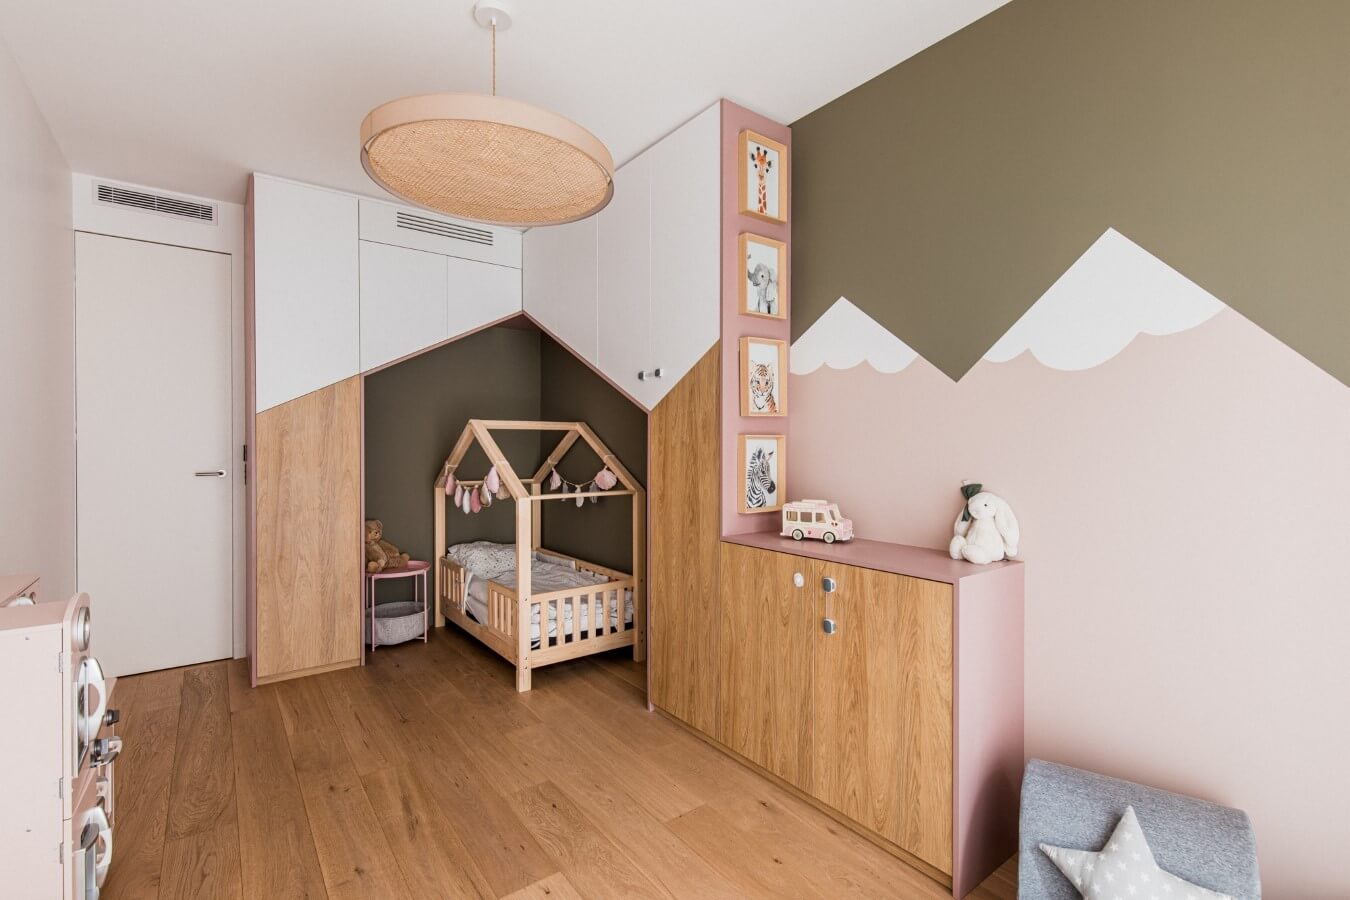 Chambre d'enfant, peinture montagne rose et kaki. Lit en forme de maison. Mobilier sur mesure et cadres animaux aquarelle, rénovation par l'agence d'architecture u design paris